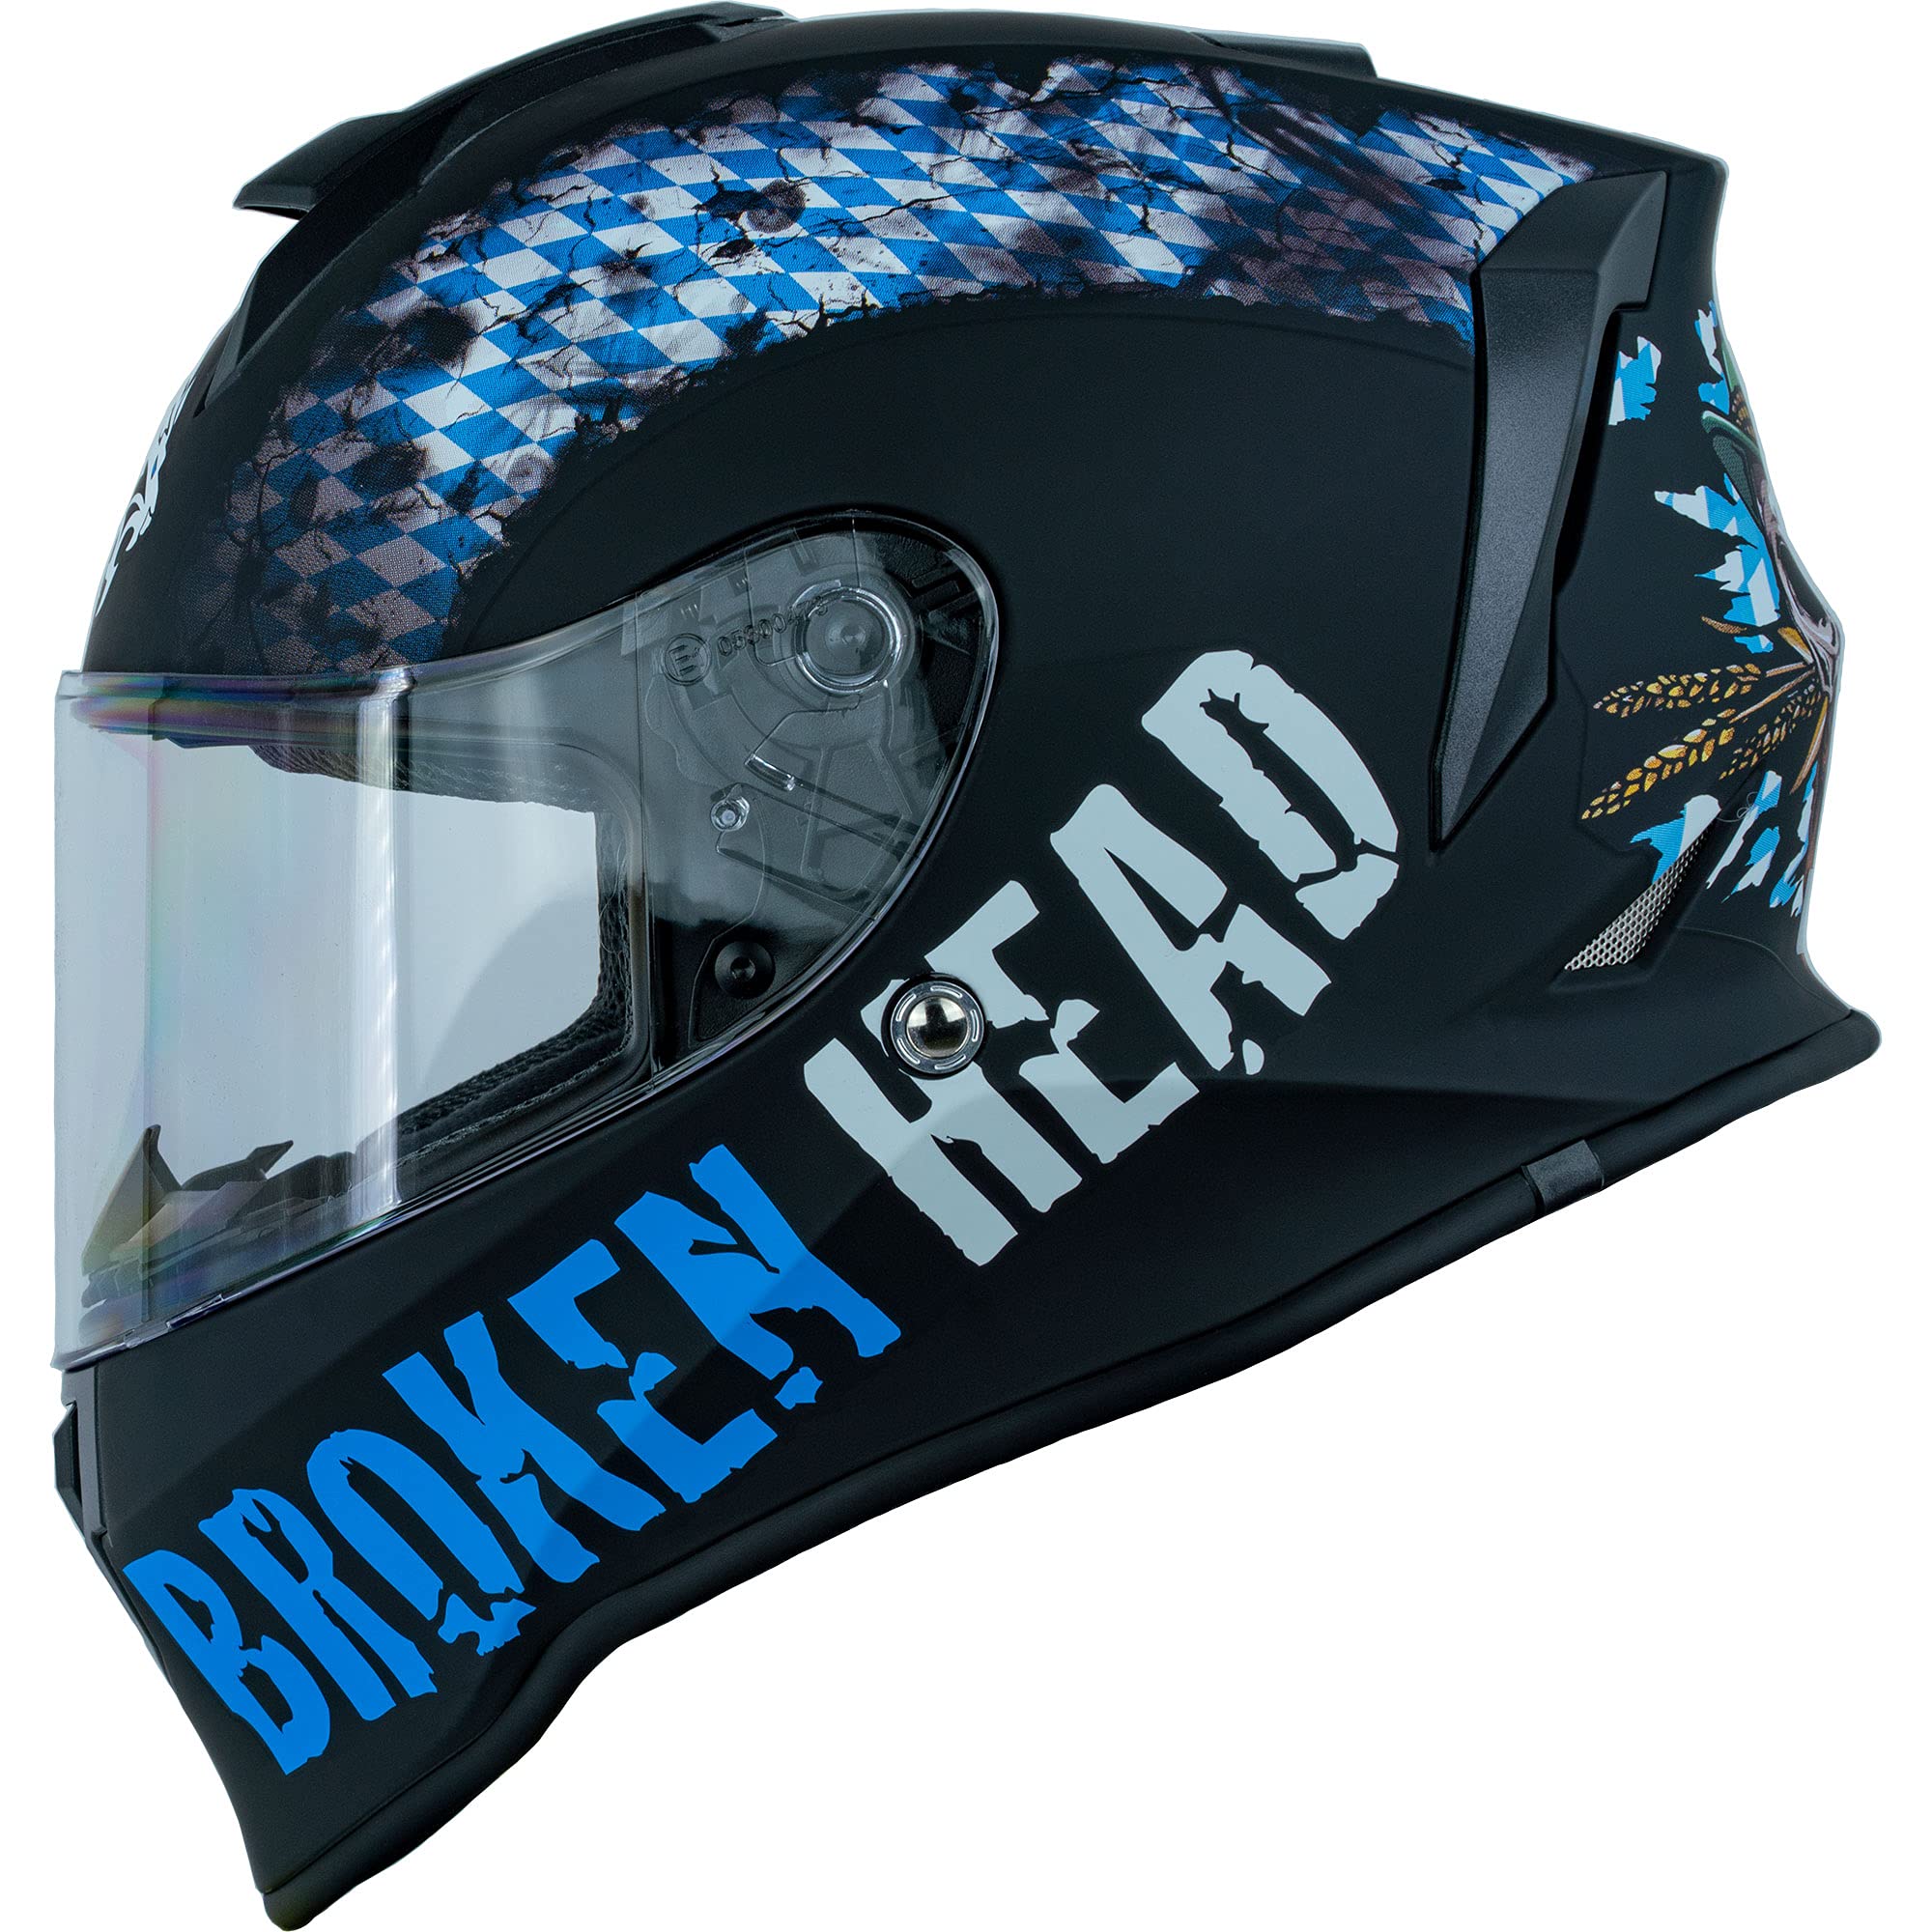 Broken Head Bavarian Patriot Integral-Helm - Sportlicher Motorradhelm - Helm mit Bayern Lifestyle Design, Blau/Schwarz (S (55-56 cm))